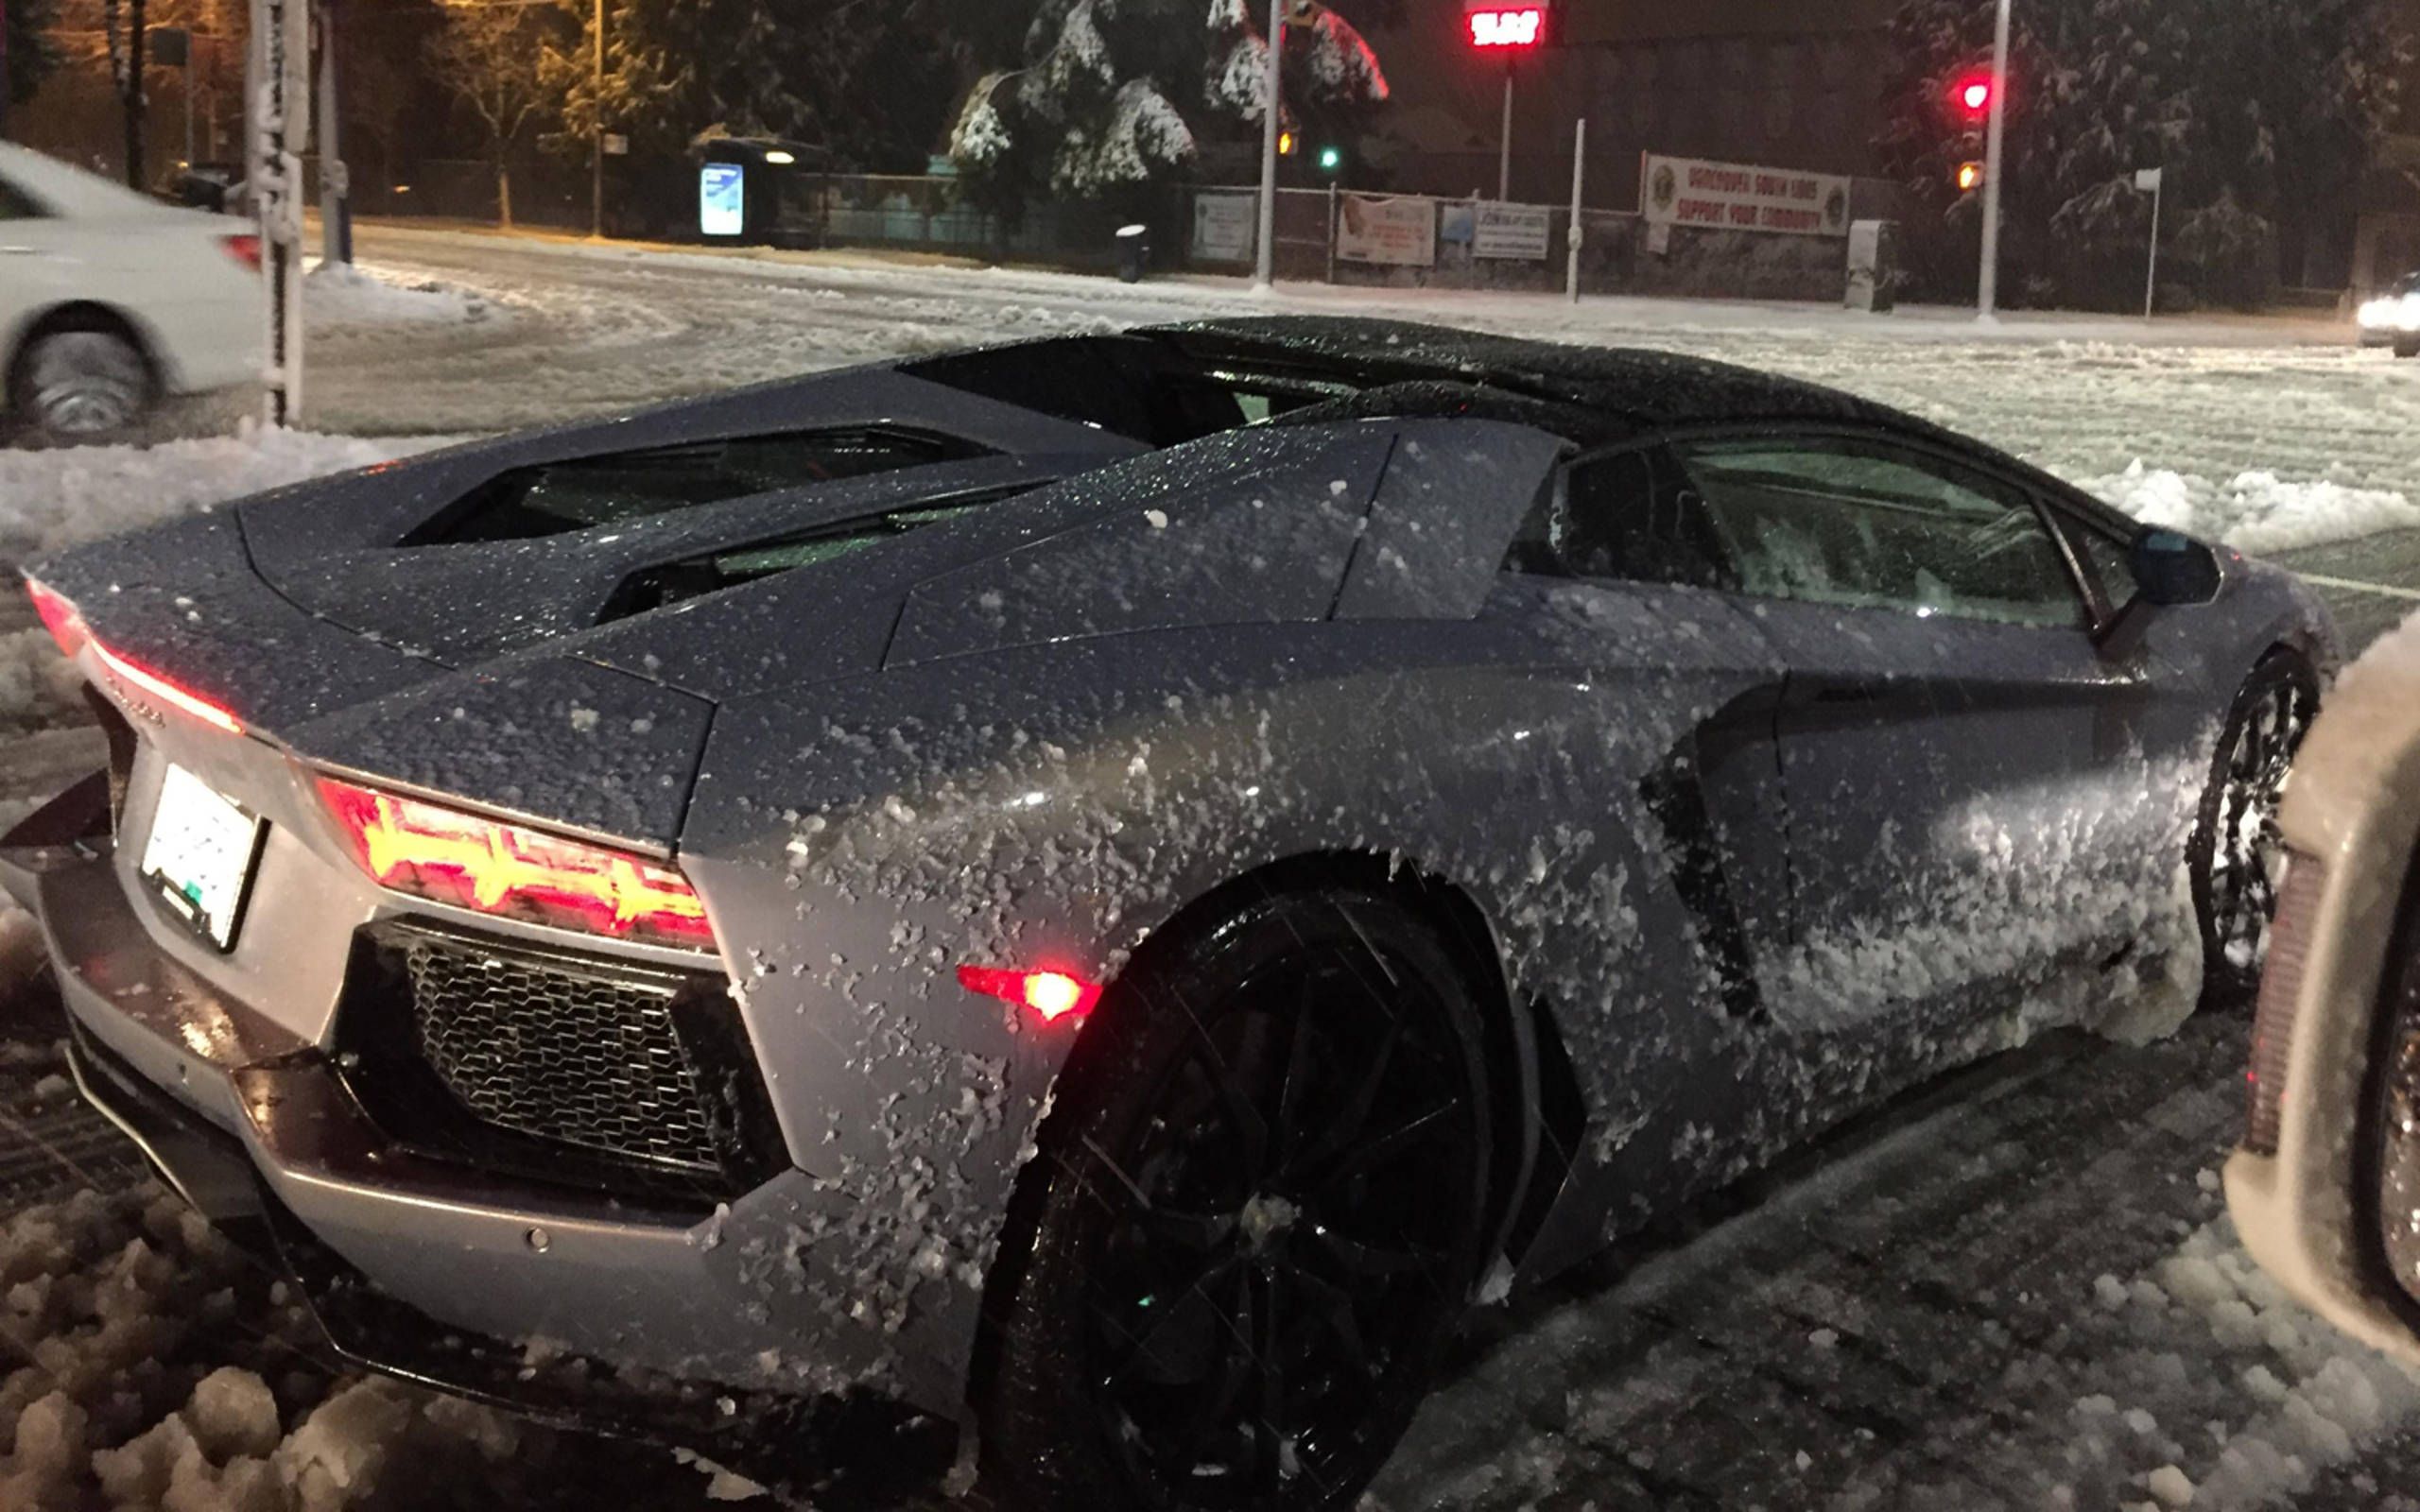 Lamborghini Aventador: Ready for Winter